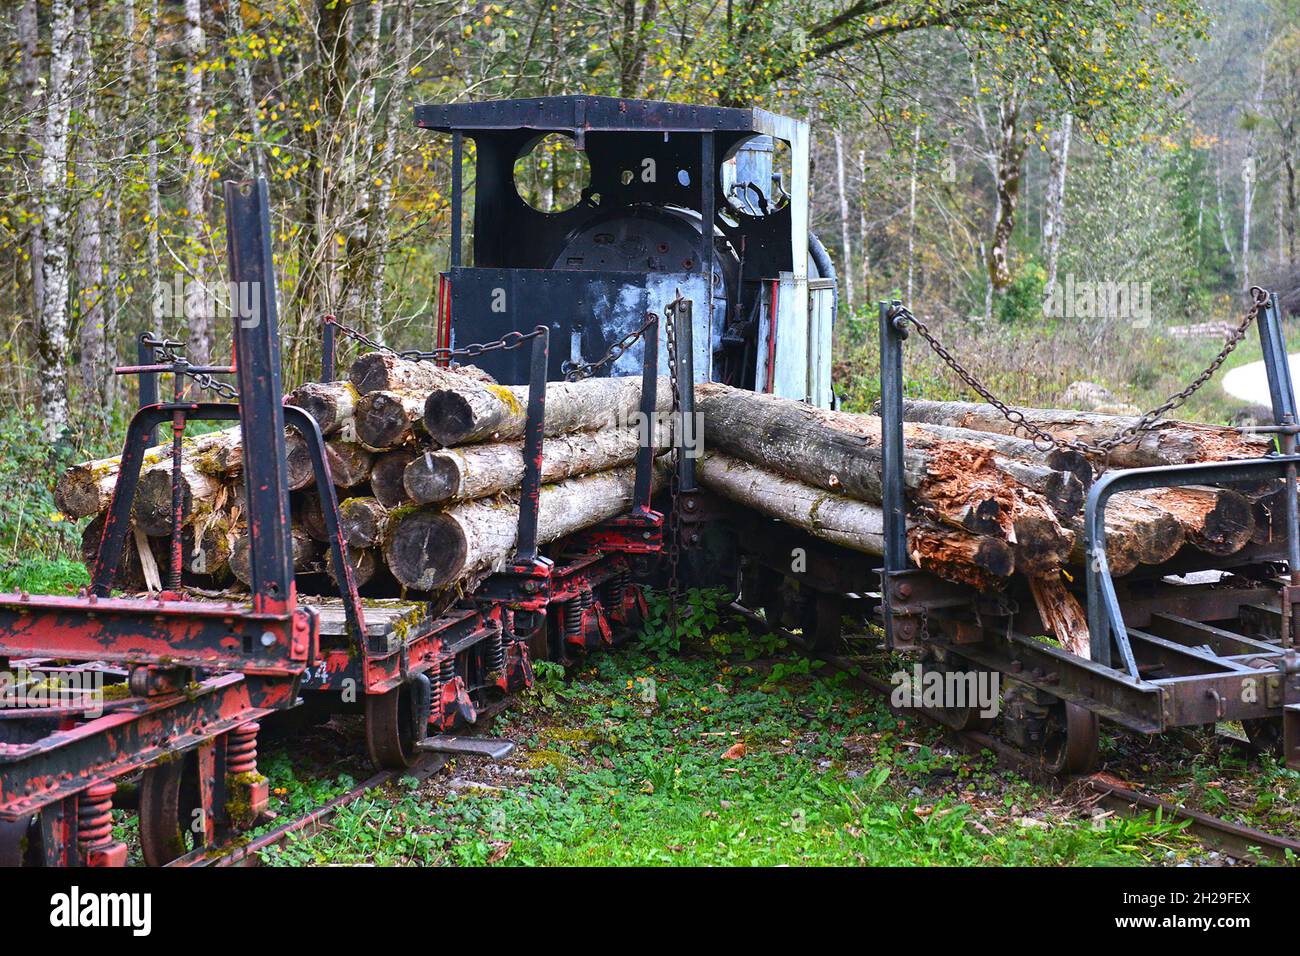 Eine allte ausrangierte Dampflokomotive der 'Waldbahn' in Reichraming (Oberösterreich, Österreich) - An old discarded steam locomotive of the 'Waldbah Stock Photo